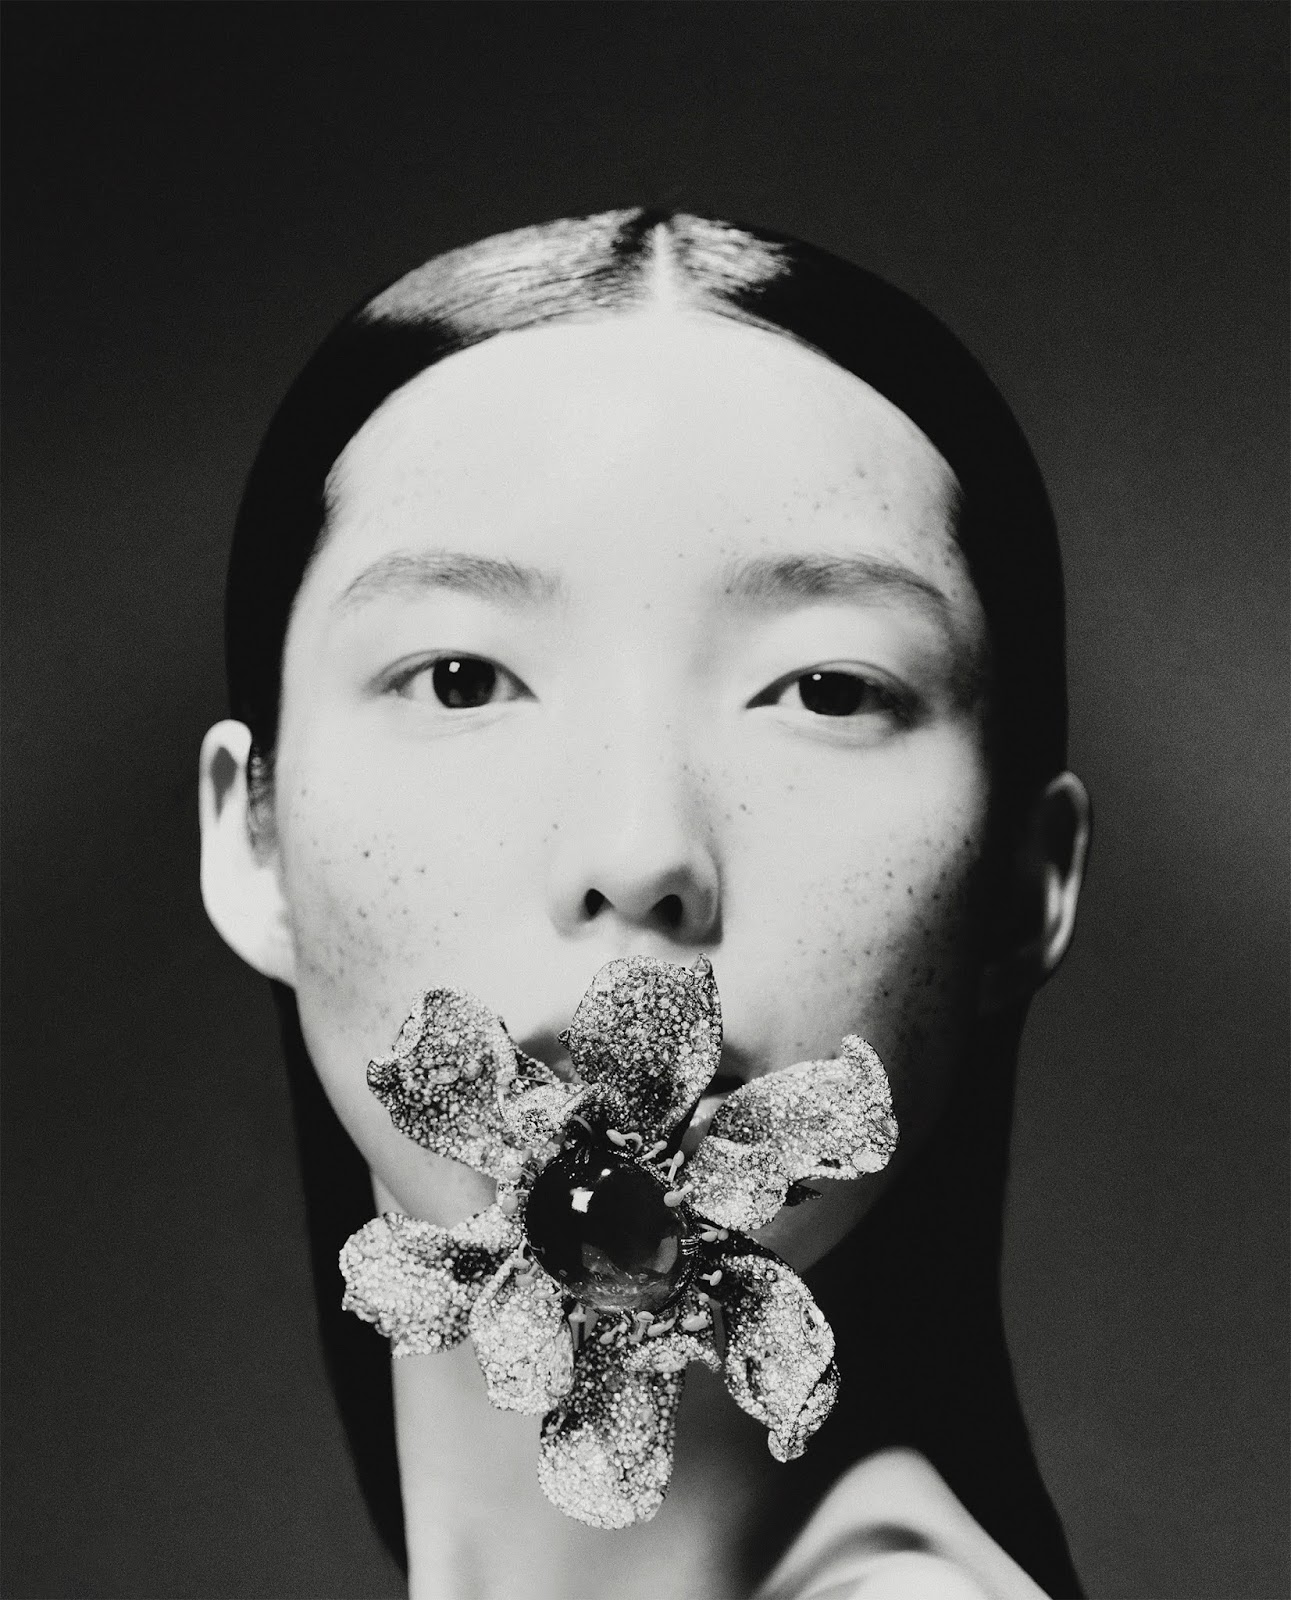 Jesse Hsu in Vogue Taiwan September 2020 by Zhong Lin | LaptrinhX / News